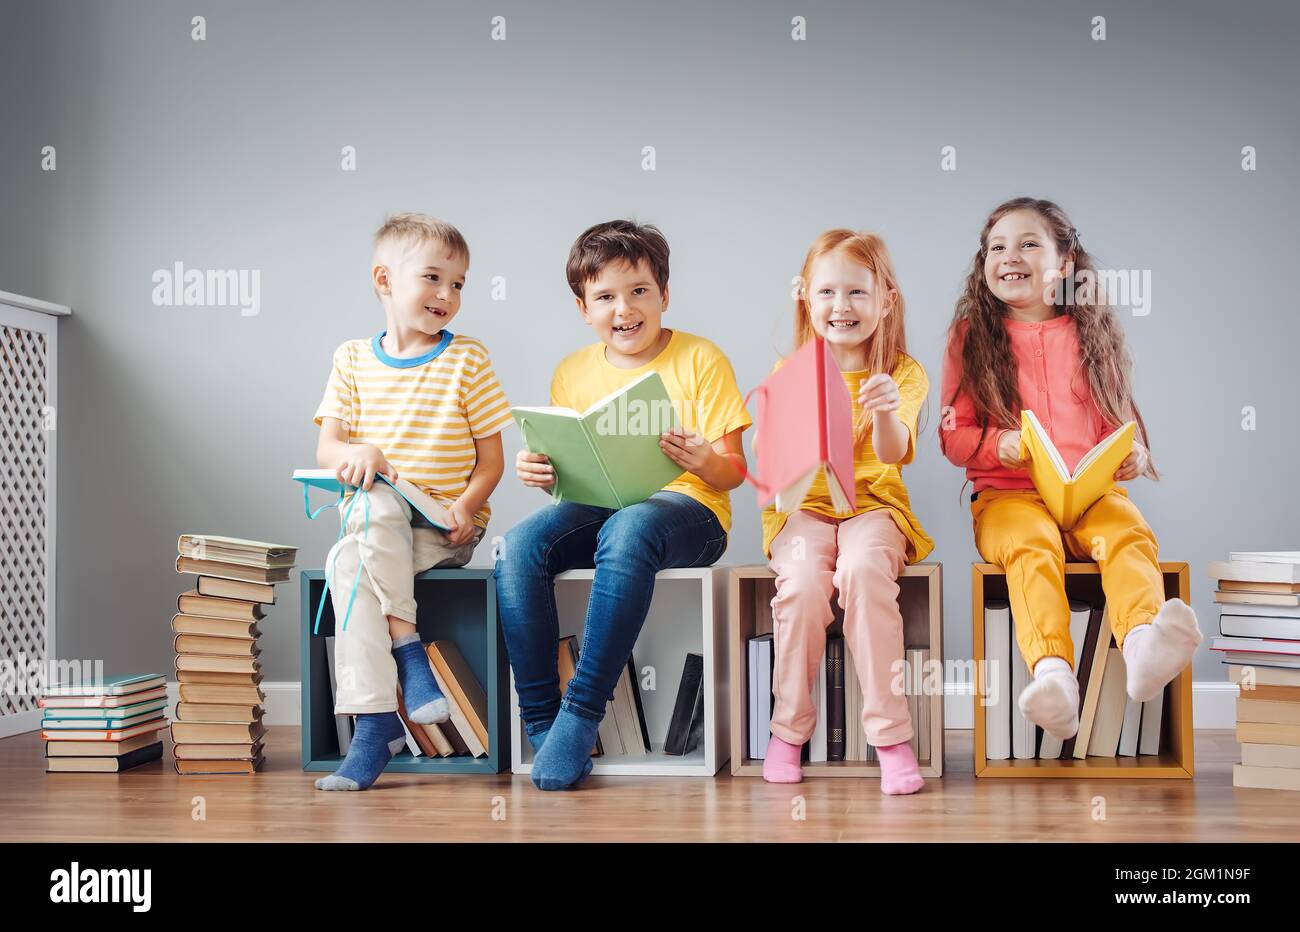 Gruppe von Kindern, die auf den Bücherstapeln und in den Bücherregalen im Raum sitzen und Zeitschriften lesen. Stockfoto